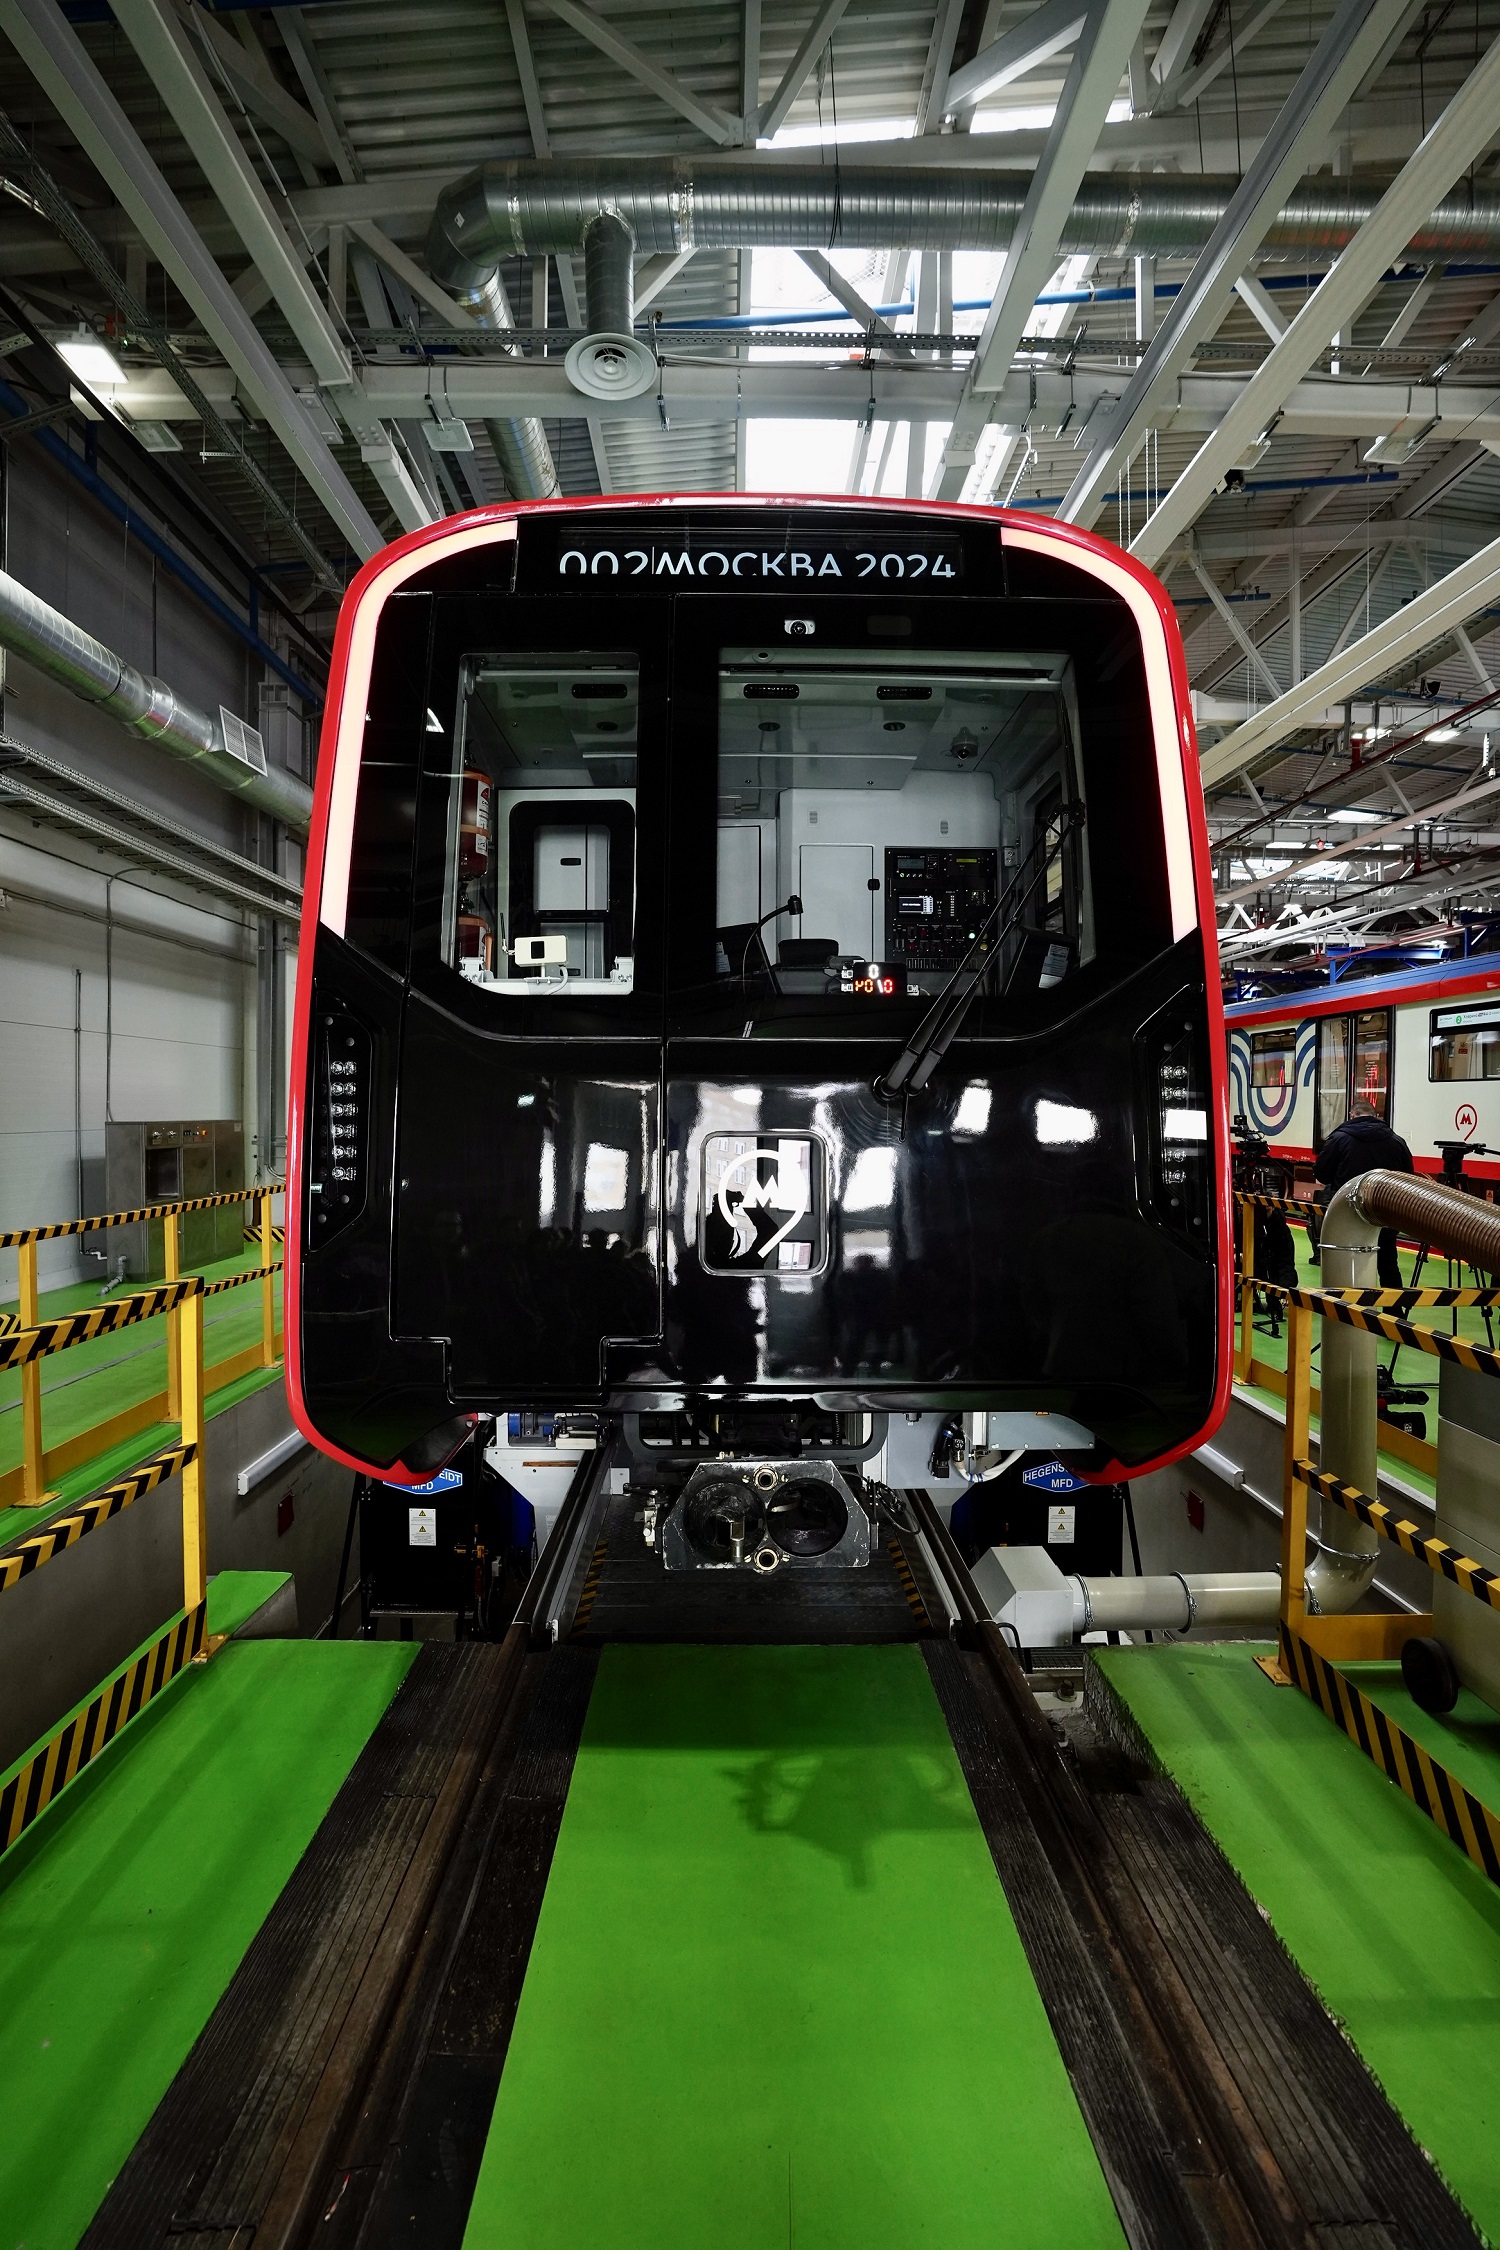 Новый поезд «Москва-2024» введен в эксплуатацию в Московском метрополитене Дизайн-проект поезда создан 2050.ЛАБ - фото 1